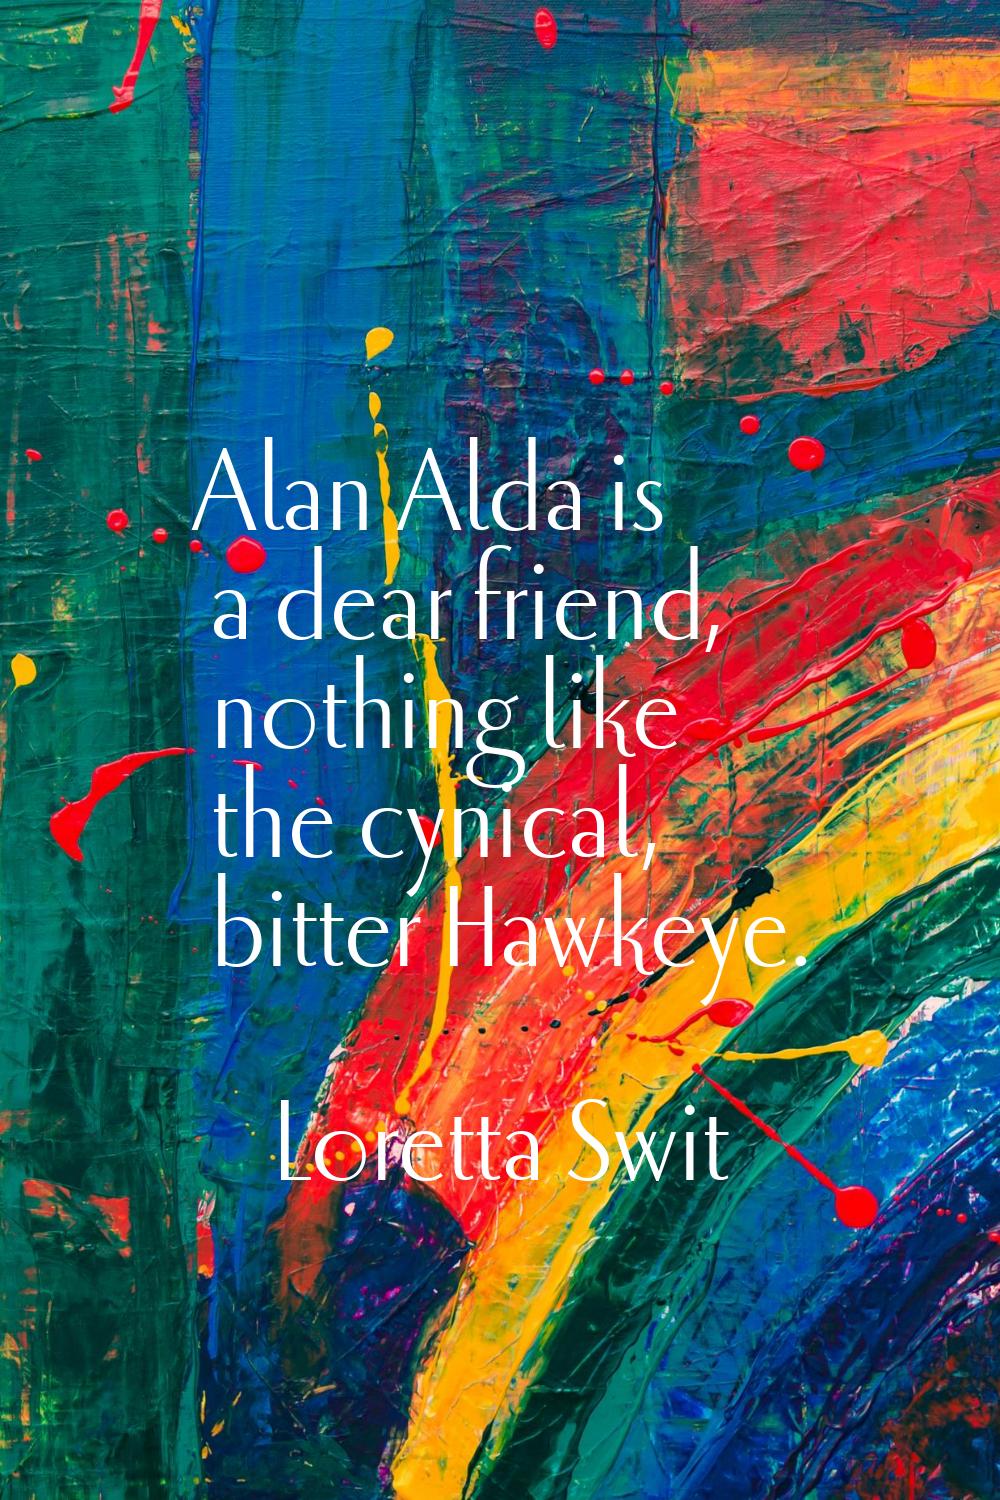 Alan Alda is a dear friend, nothing like the cynical, bitter Hawkeye.